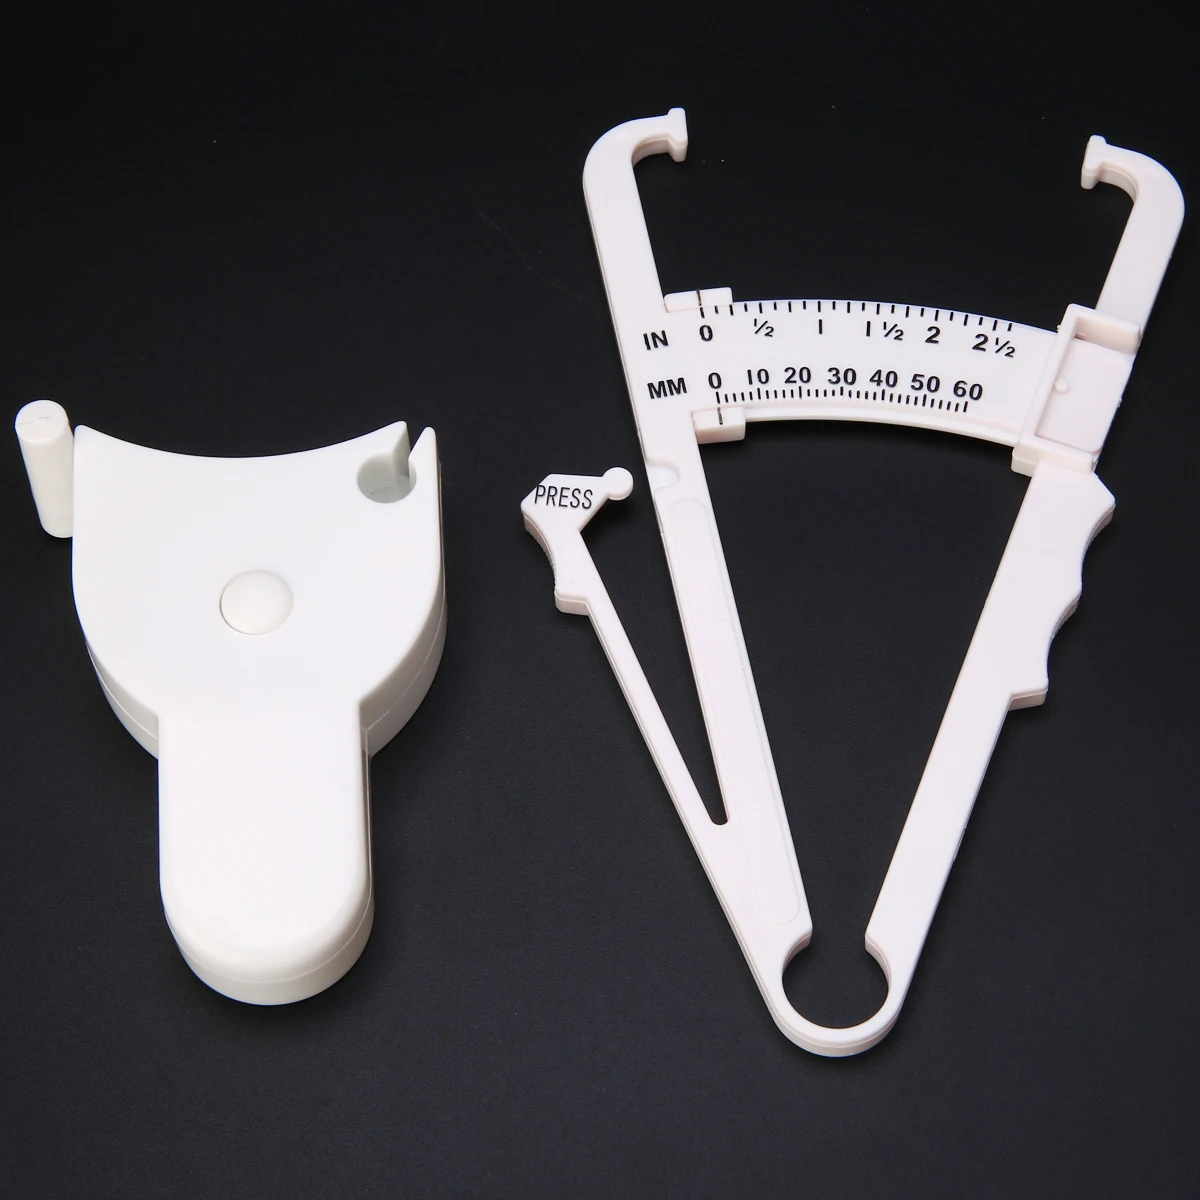 2 шт. штангенциркуль для измерения жира, измерительная лента, тестер для фитнеса, похудения, оборудование для фитнеса, стойки, аксессуары